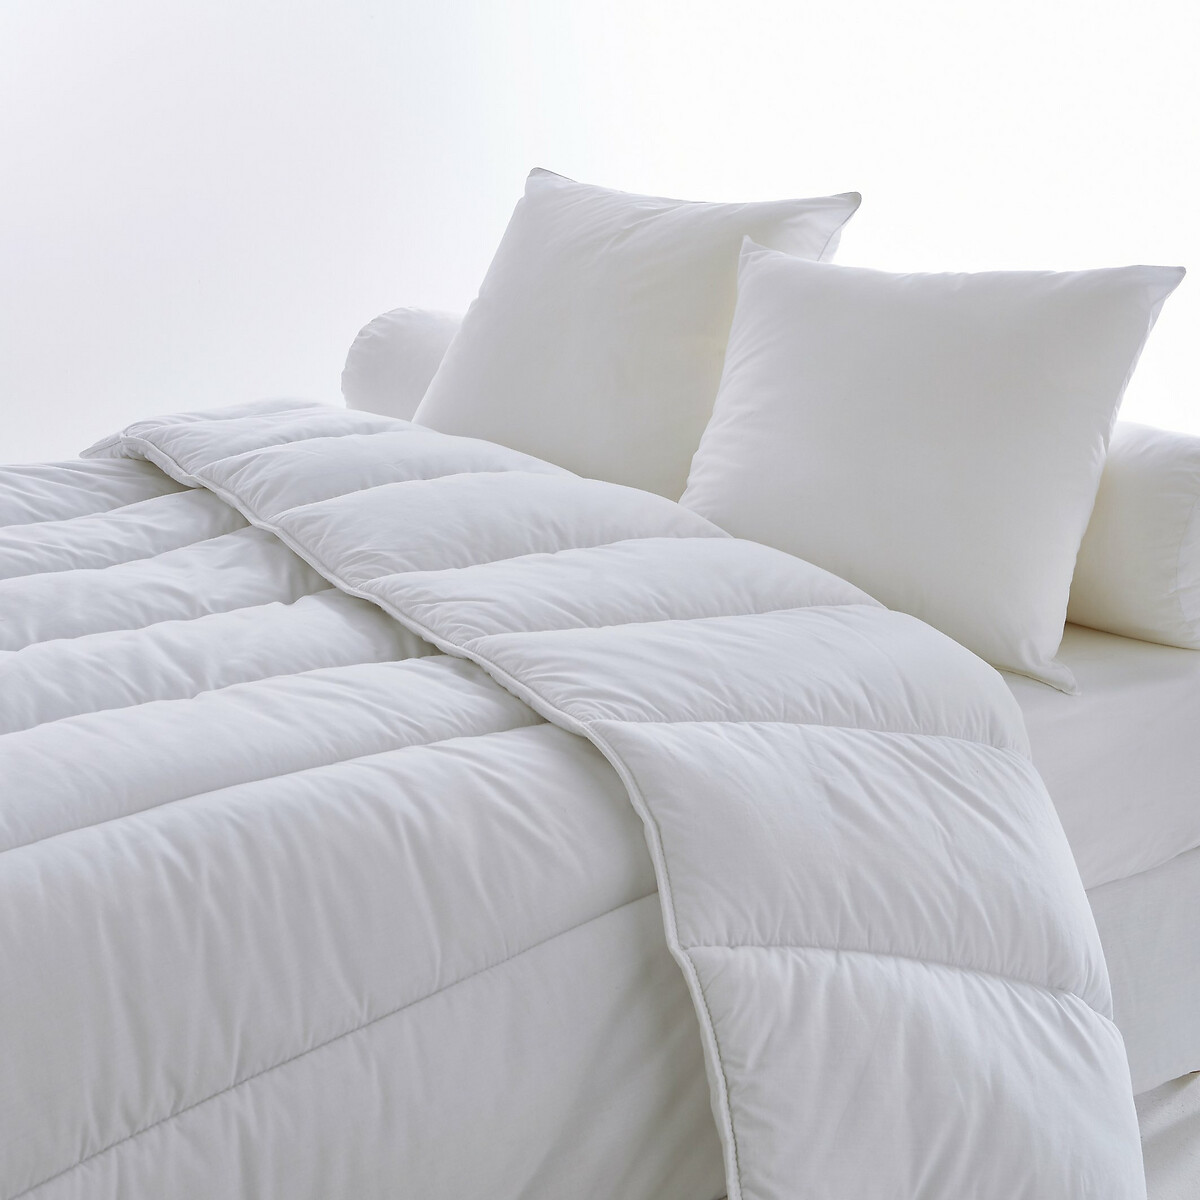 Подушка La Redoute И одеяло  гм 140 x 200 см белый, размер 140 x 200 см